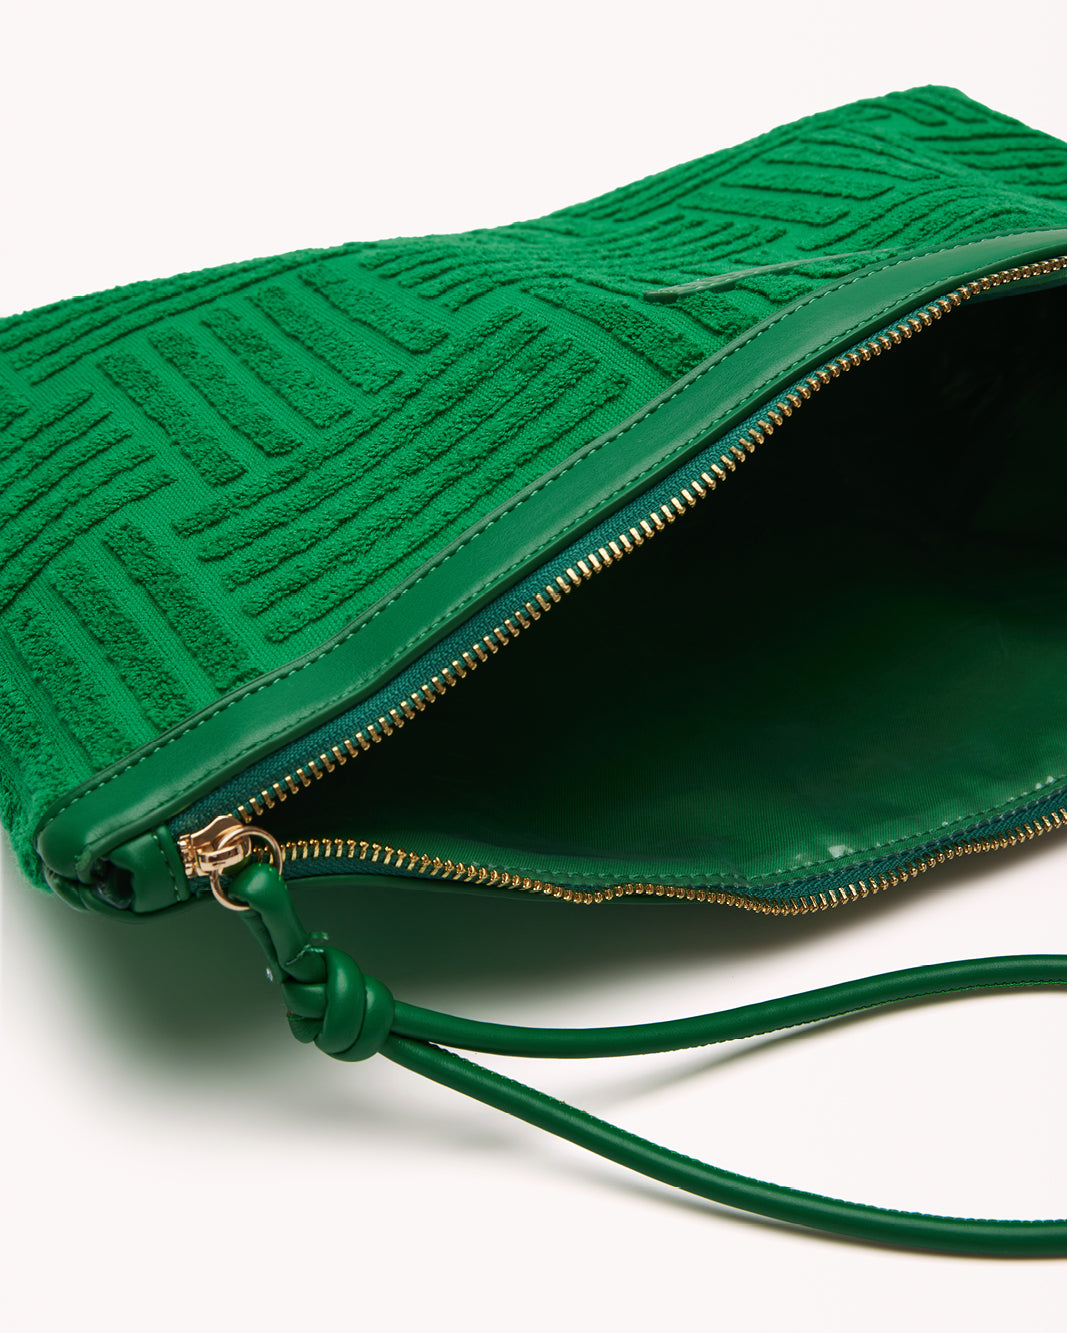 HOLLY CLUTCH BAG - GREEN TERRY-Handbags-Billini-O/S-Billini